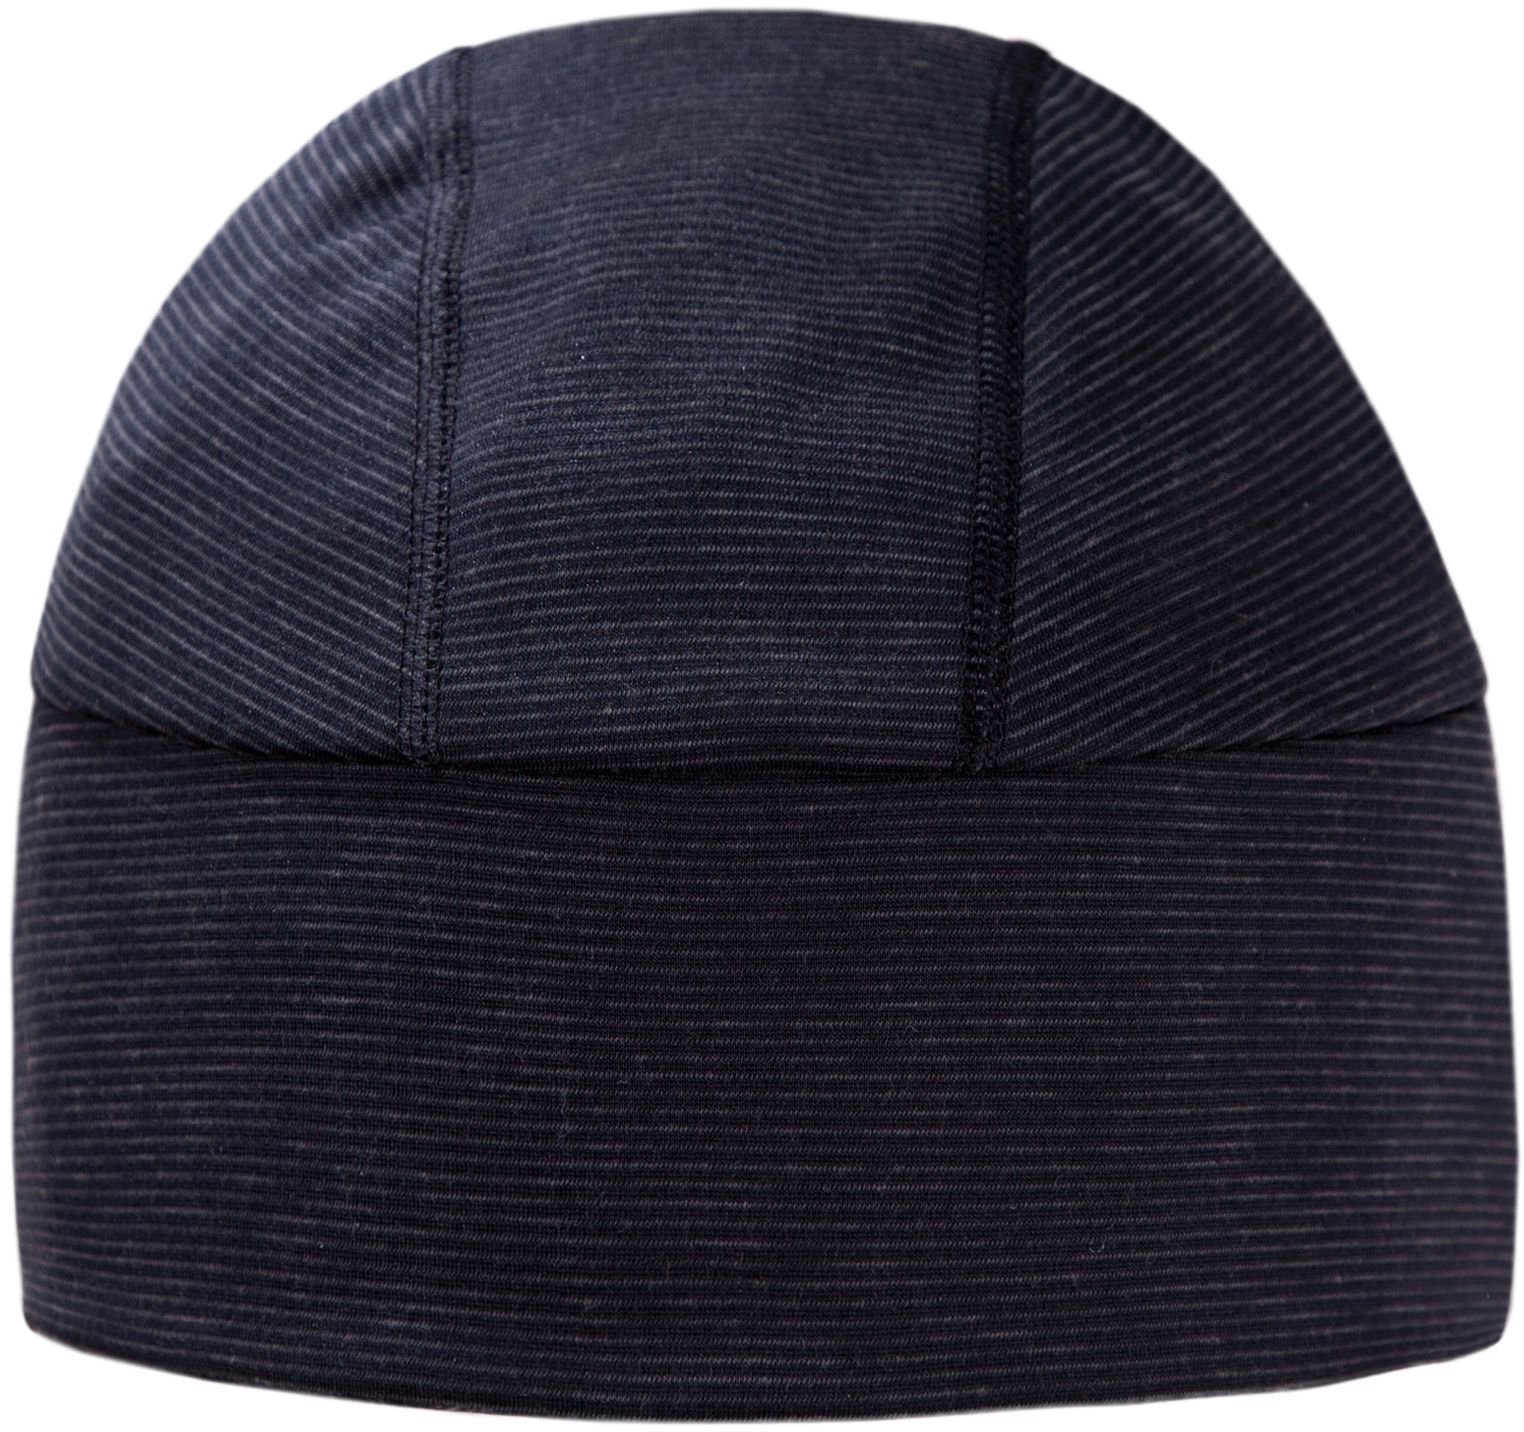 UNDER HELMET HAT A03 - Unisex Hat